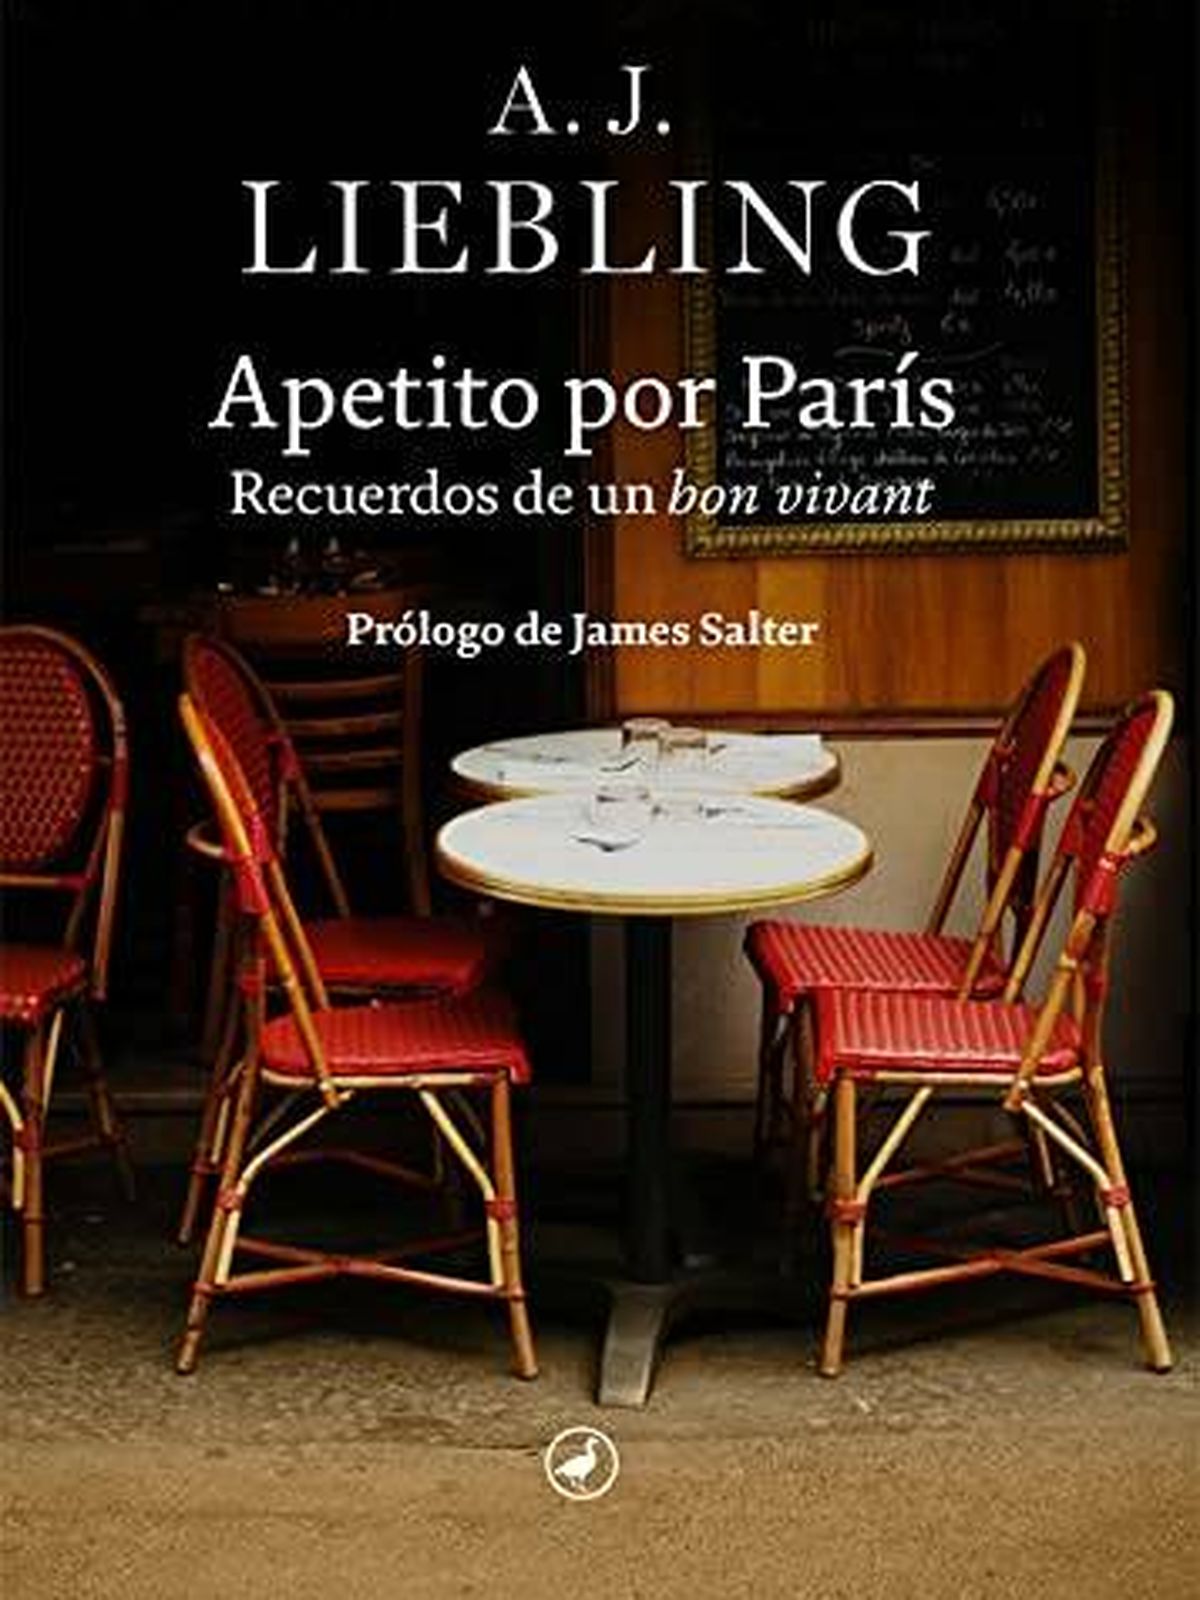 Portada de 'Apetito por París. Recuerdos de un bon vivant', de A.J. Liebling. 